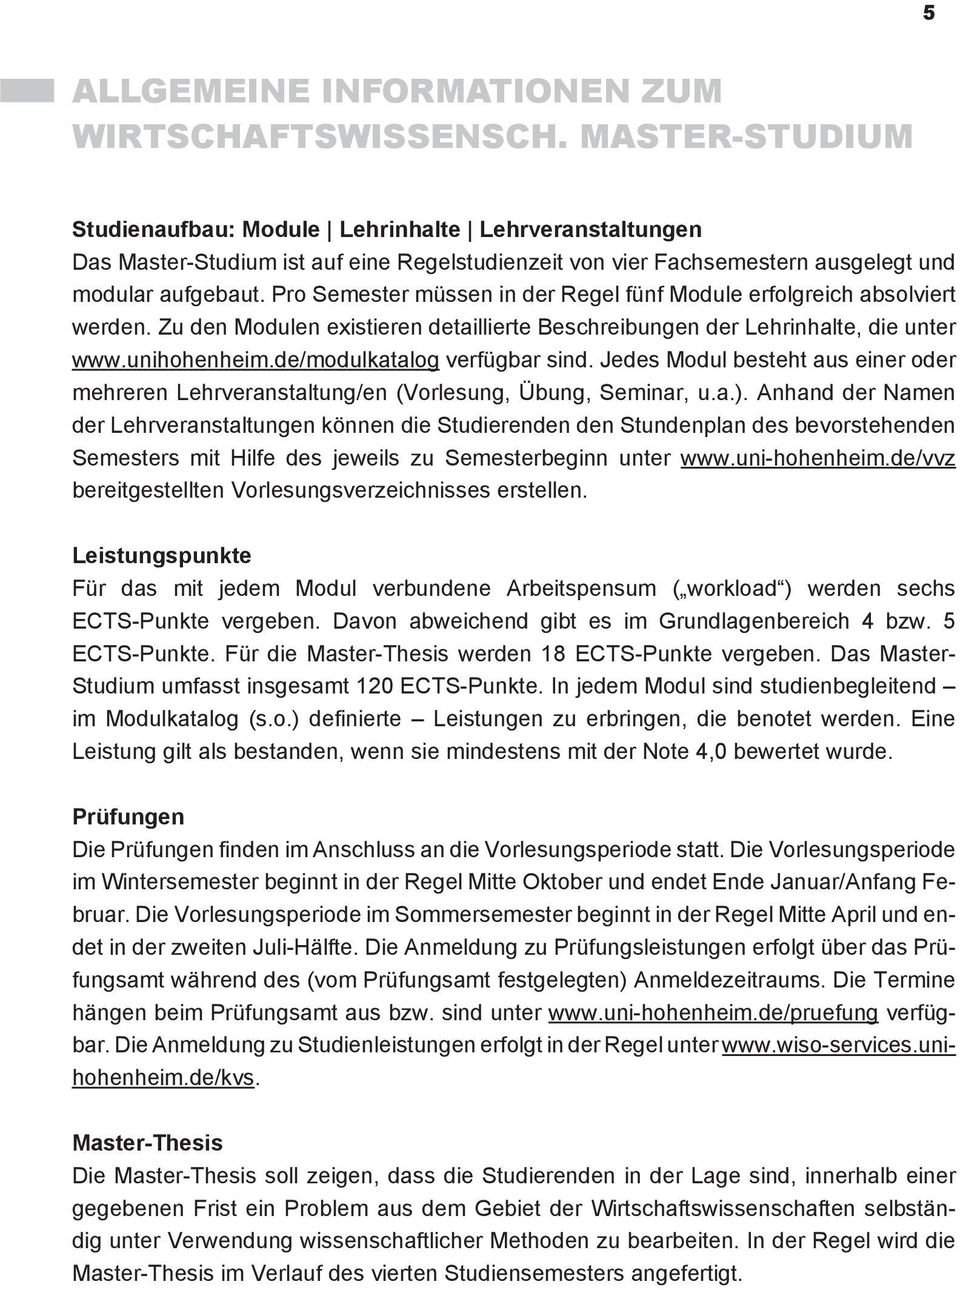 Pro müssen in der Regel fünf Module erfolgreich absolviert werden. Zu den Modulen existieren detaillierte Beschreibungen der Lehrinhalte, die unter www.unihohenheim.de/modulkatalog verfügbar sind.